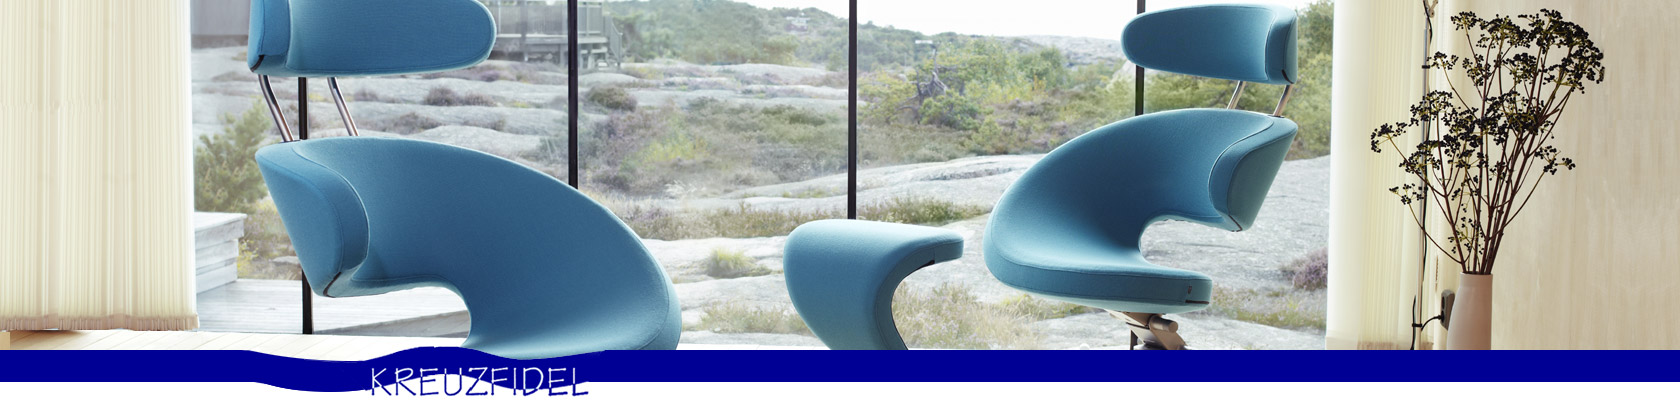 Bild von zwei blauen, ergonomischen Kreuzfidel Stühlen vor dem Fenster